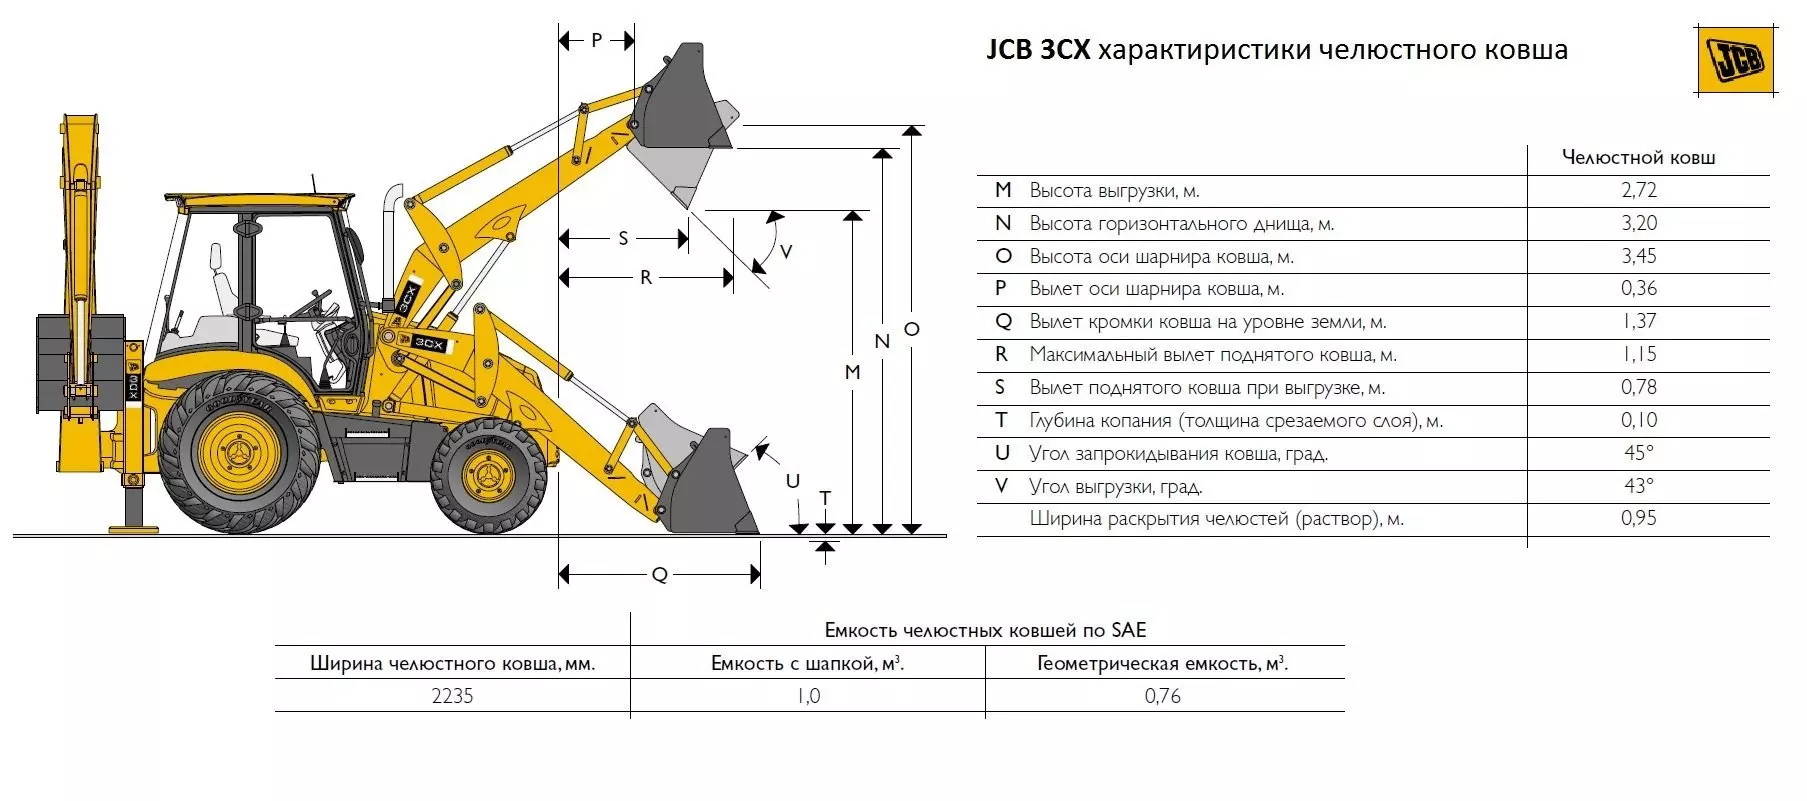 Экскаватор-погрузчик JCB 3CX